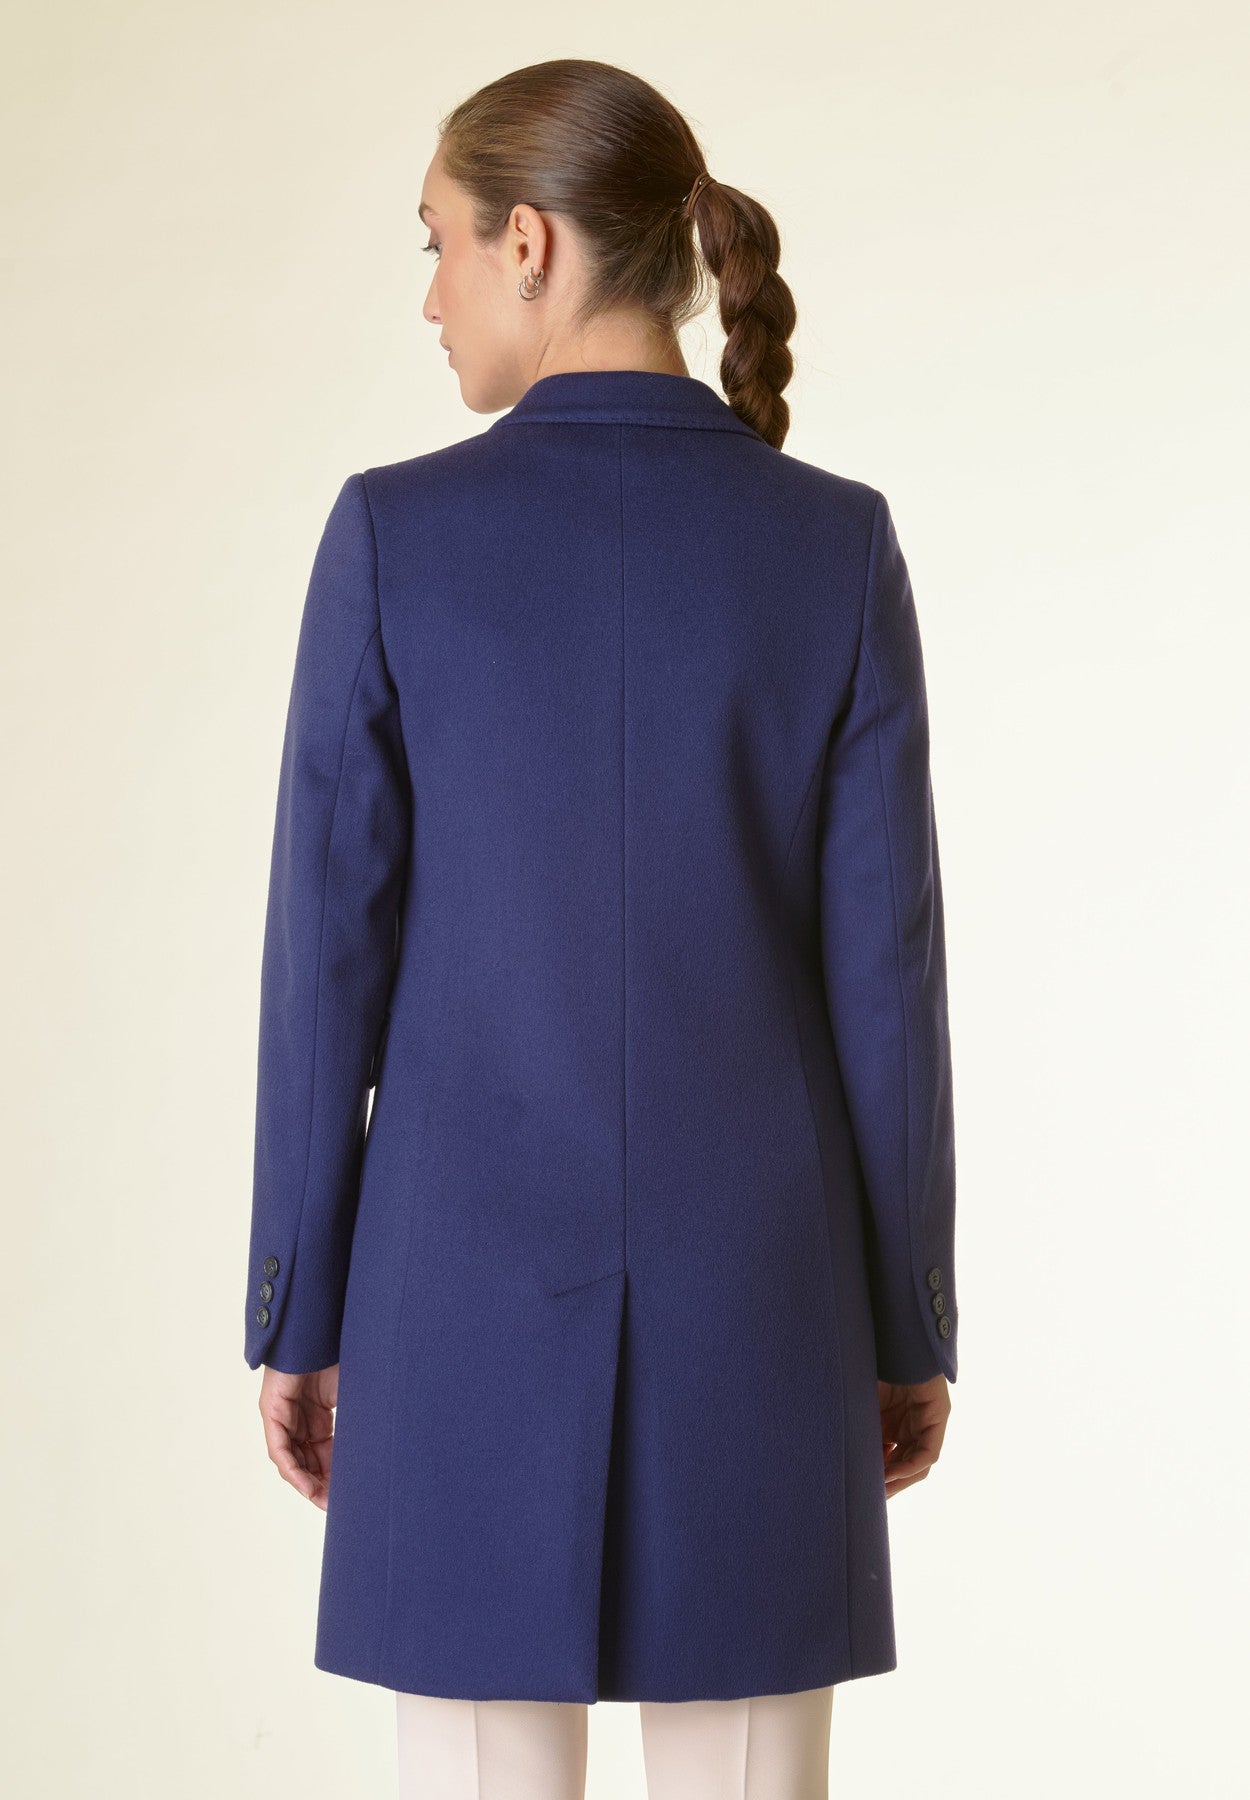 Cappotto blu corto lana cashmere